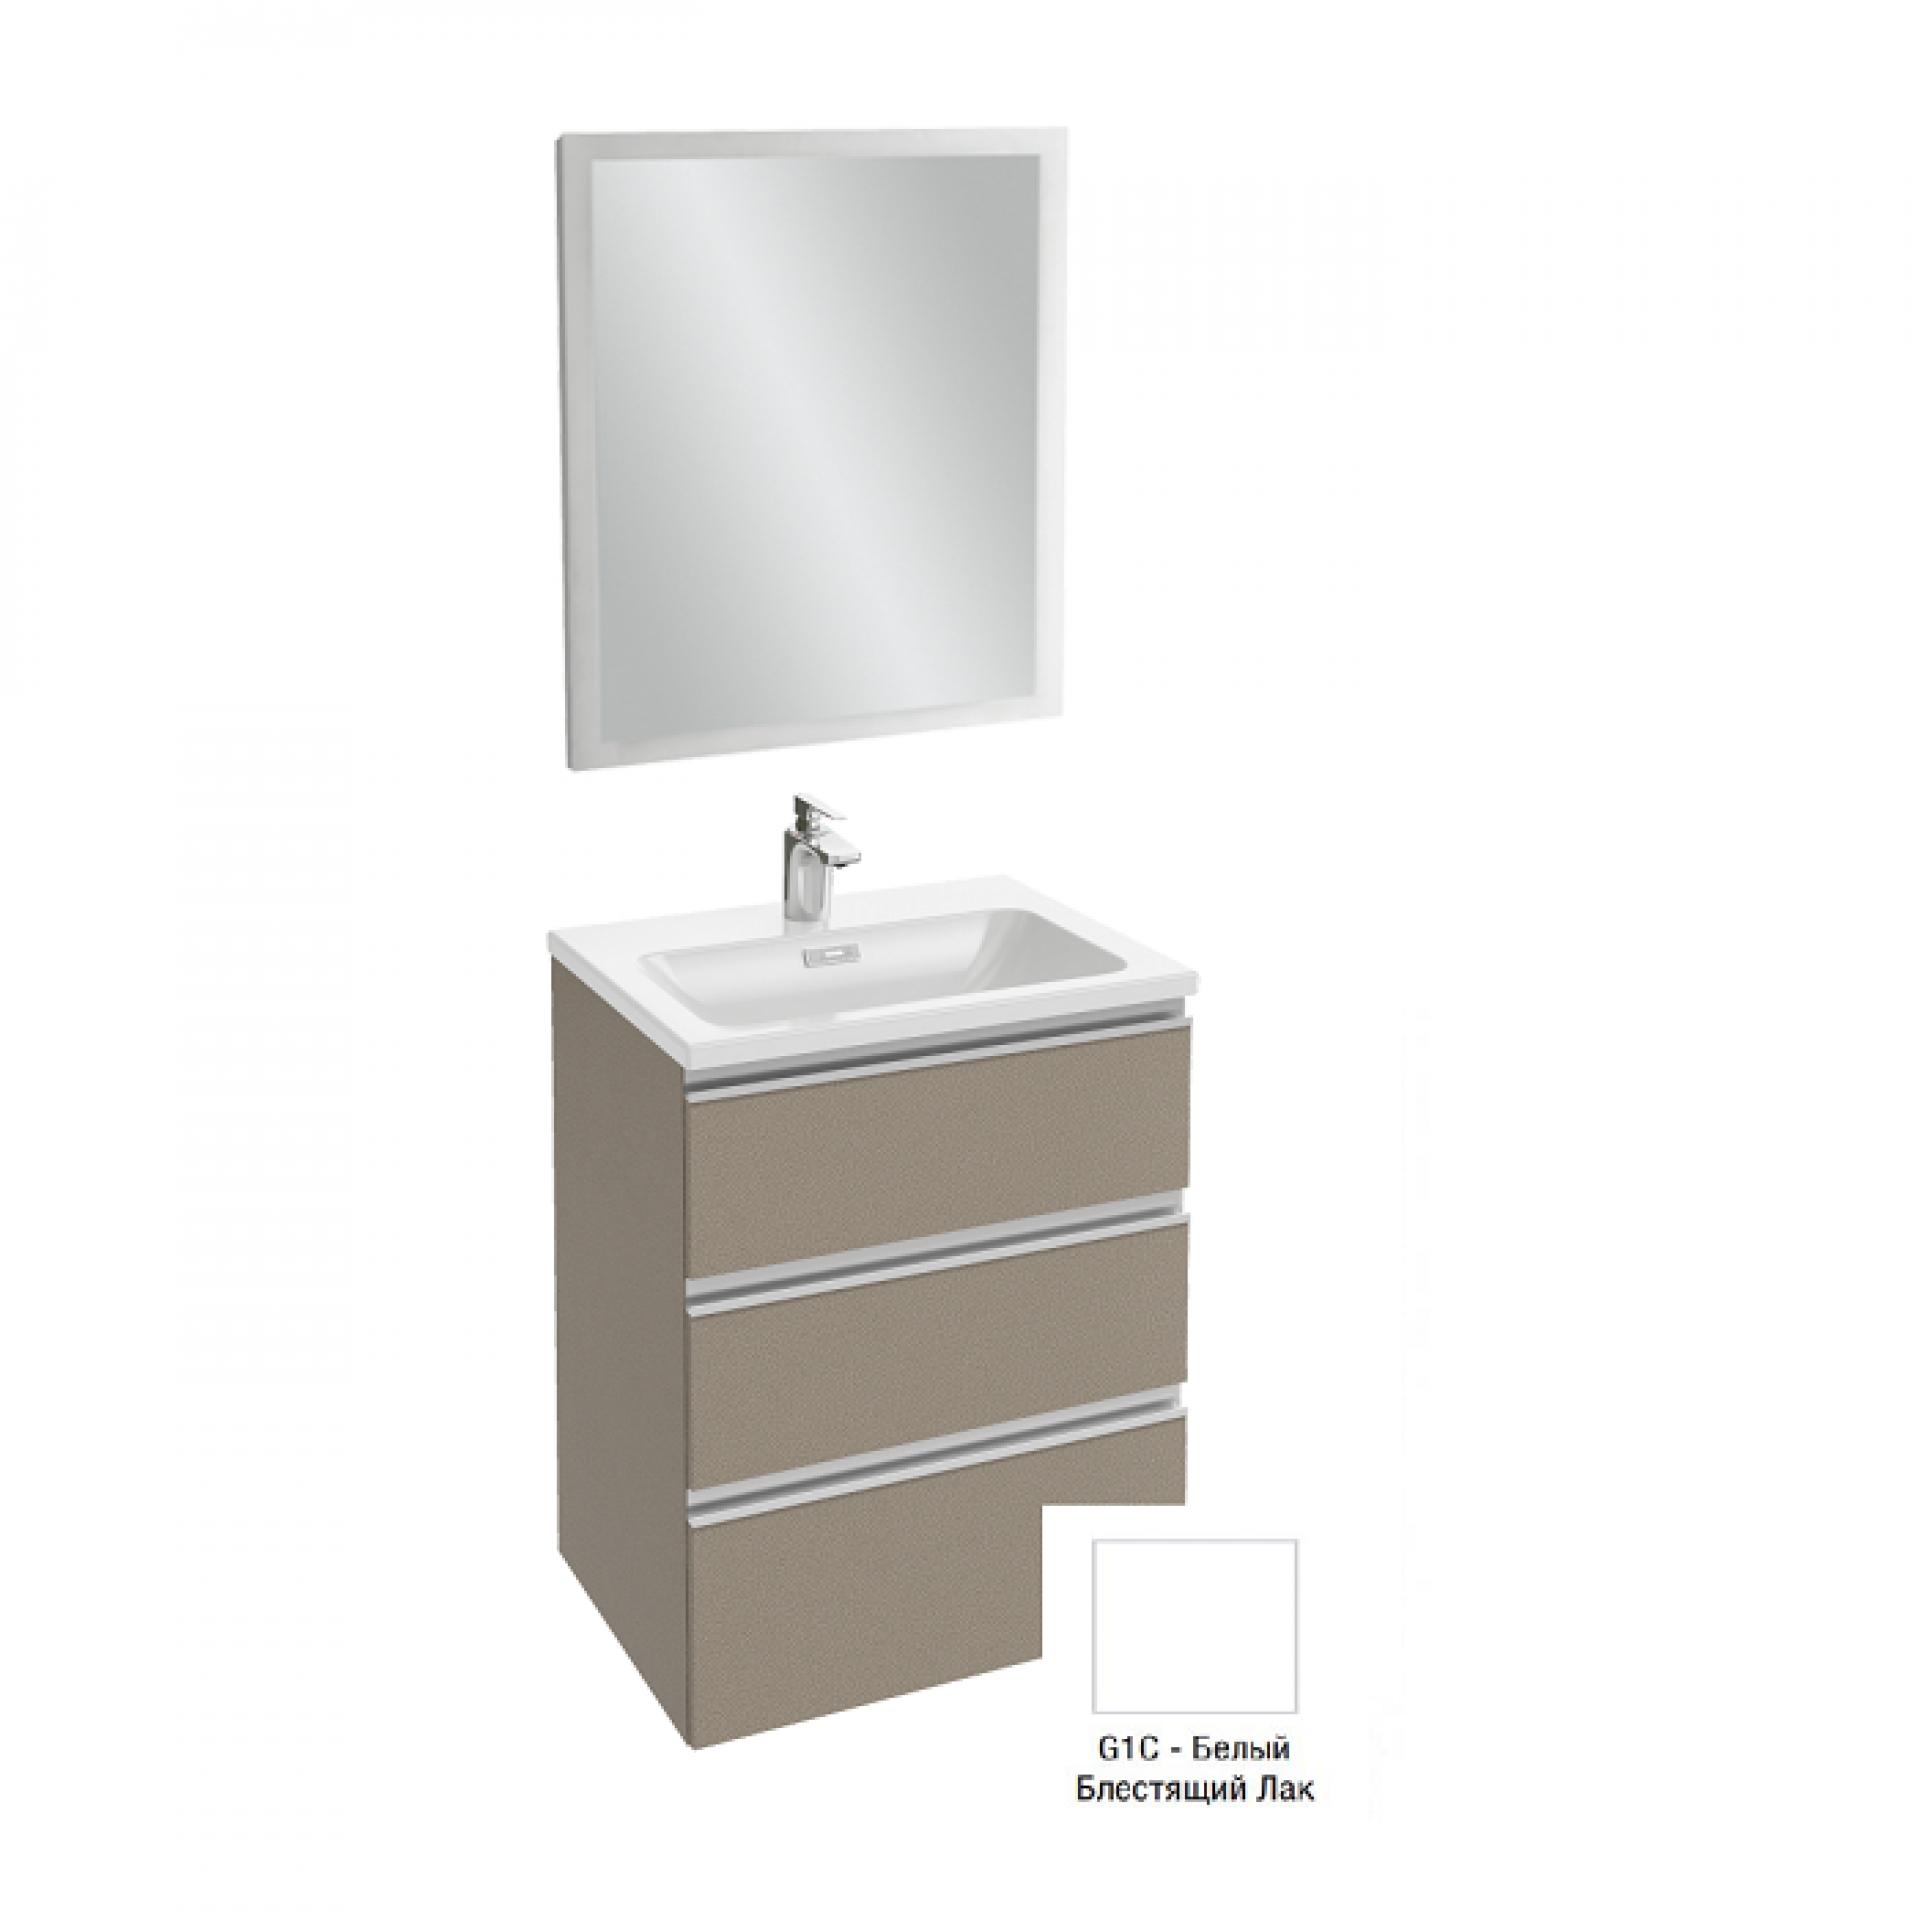 Комплект мебели 60 см Jacob Delafon Vox с раковиной EXAF112-Z-00, тумбой EB2050-RA-G1C, зеркалом EB1440-NF, белый блестящий лак